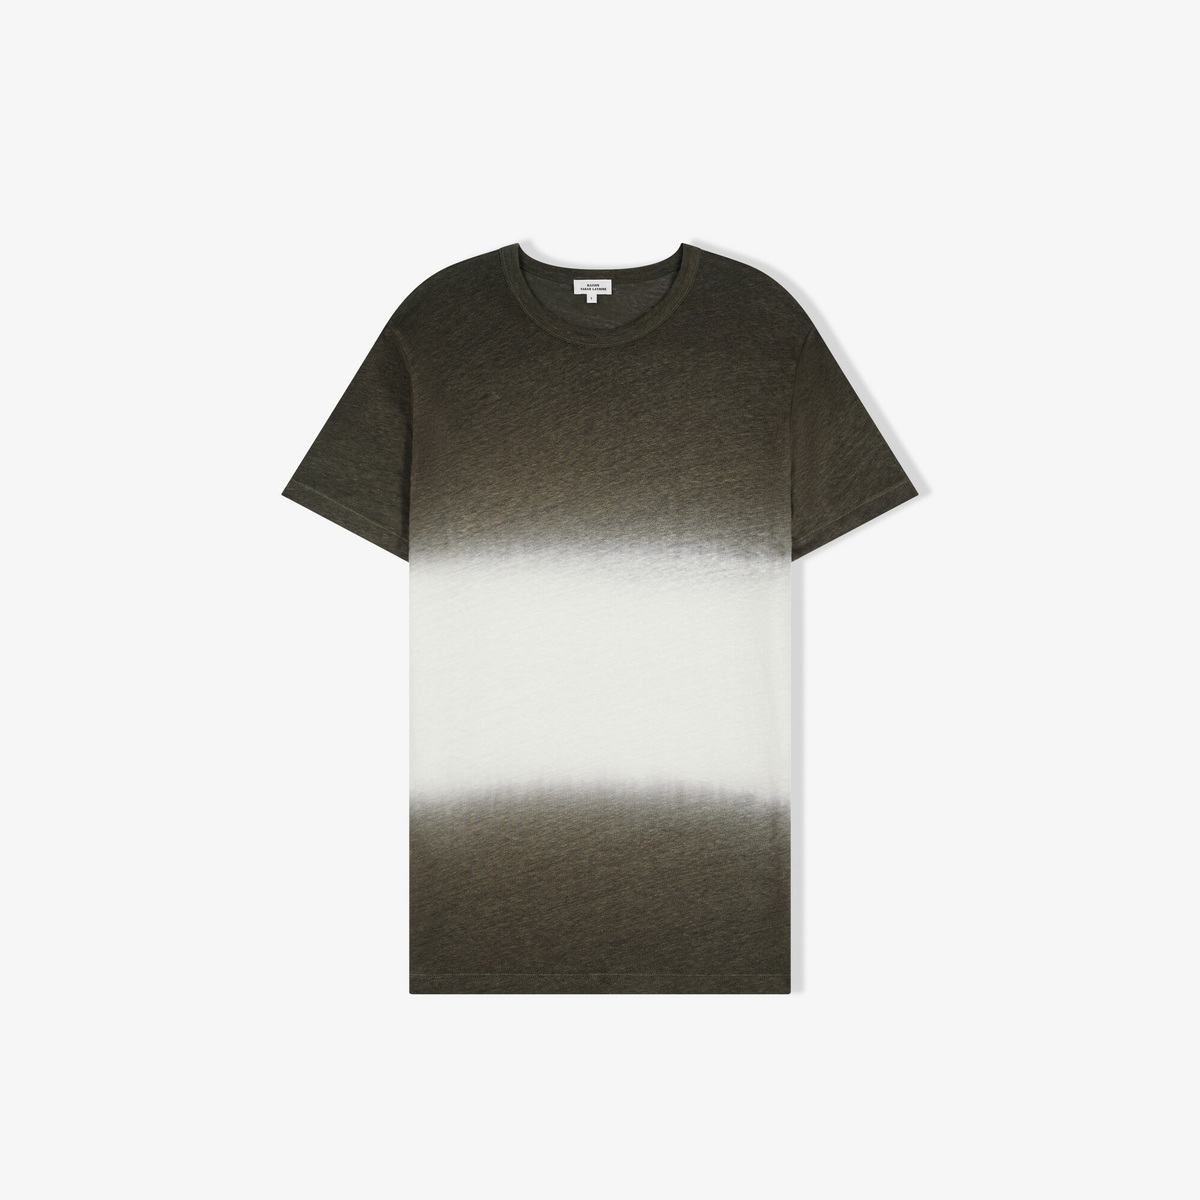 T-shirt Sèvres Charbon, Col Rond - 100% Lin - image 1